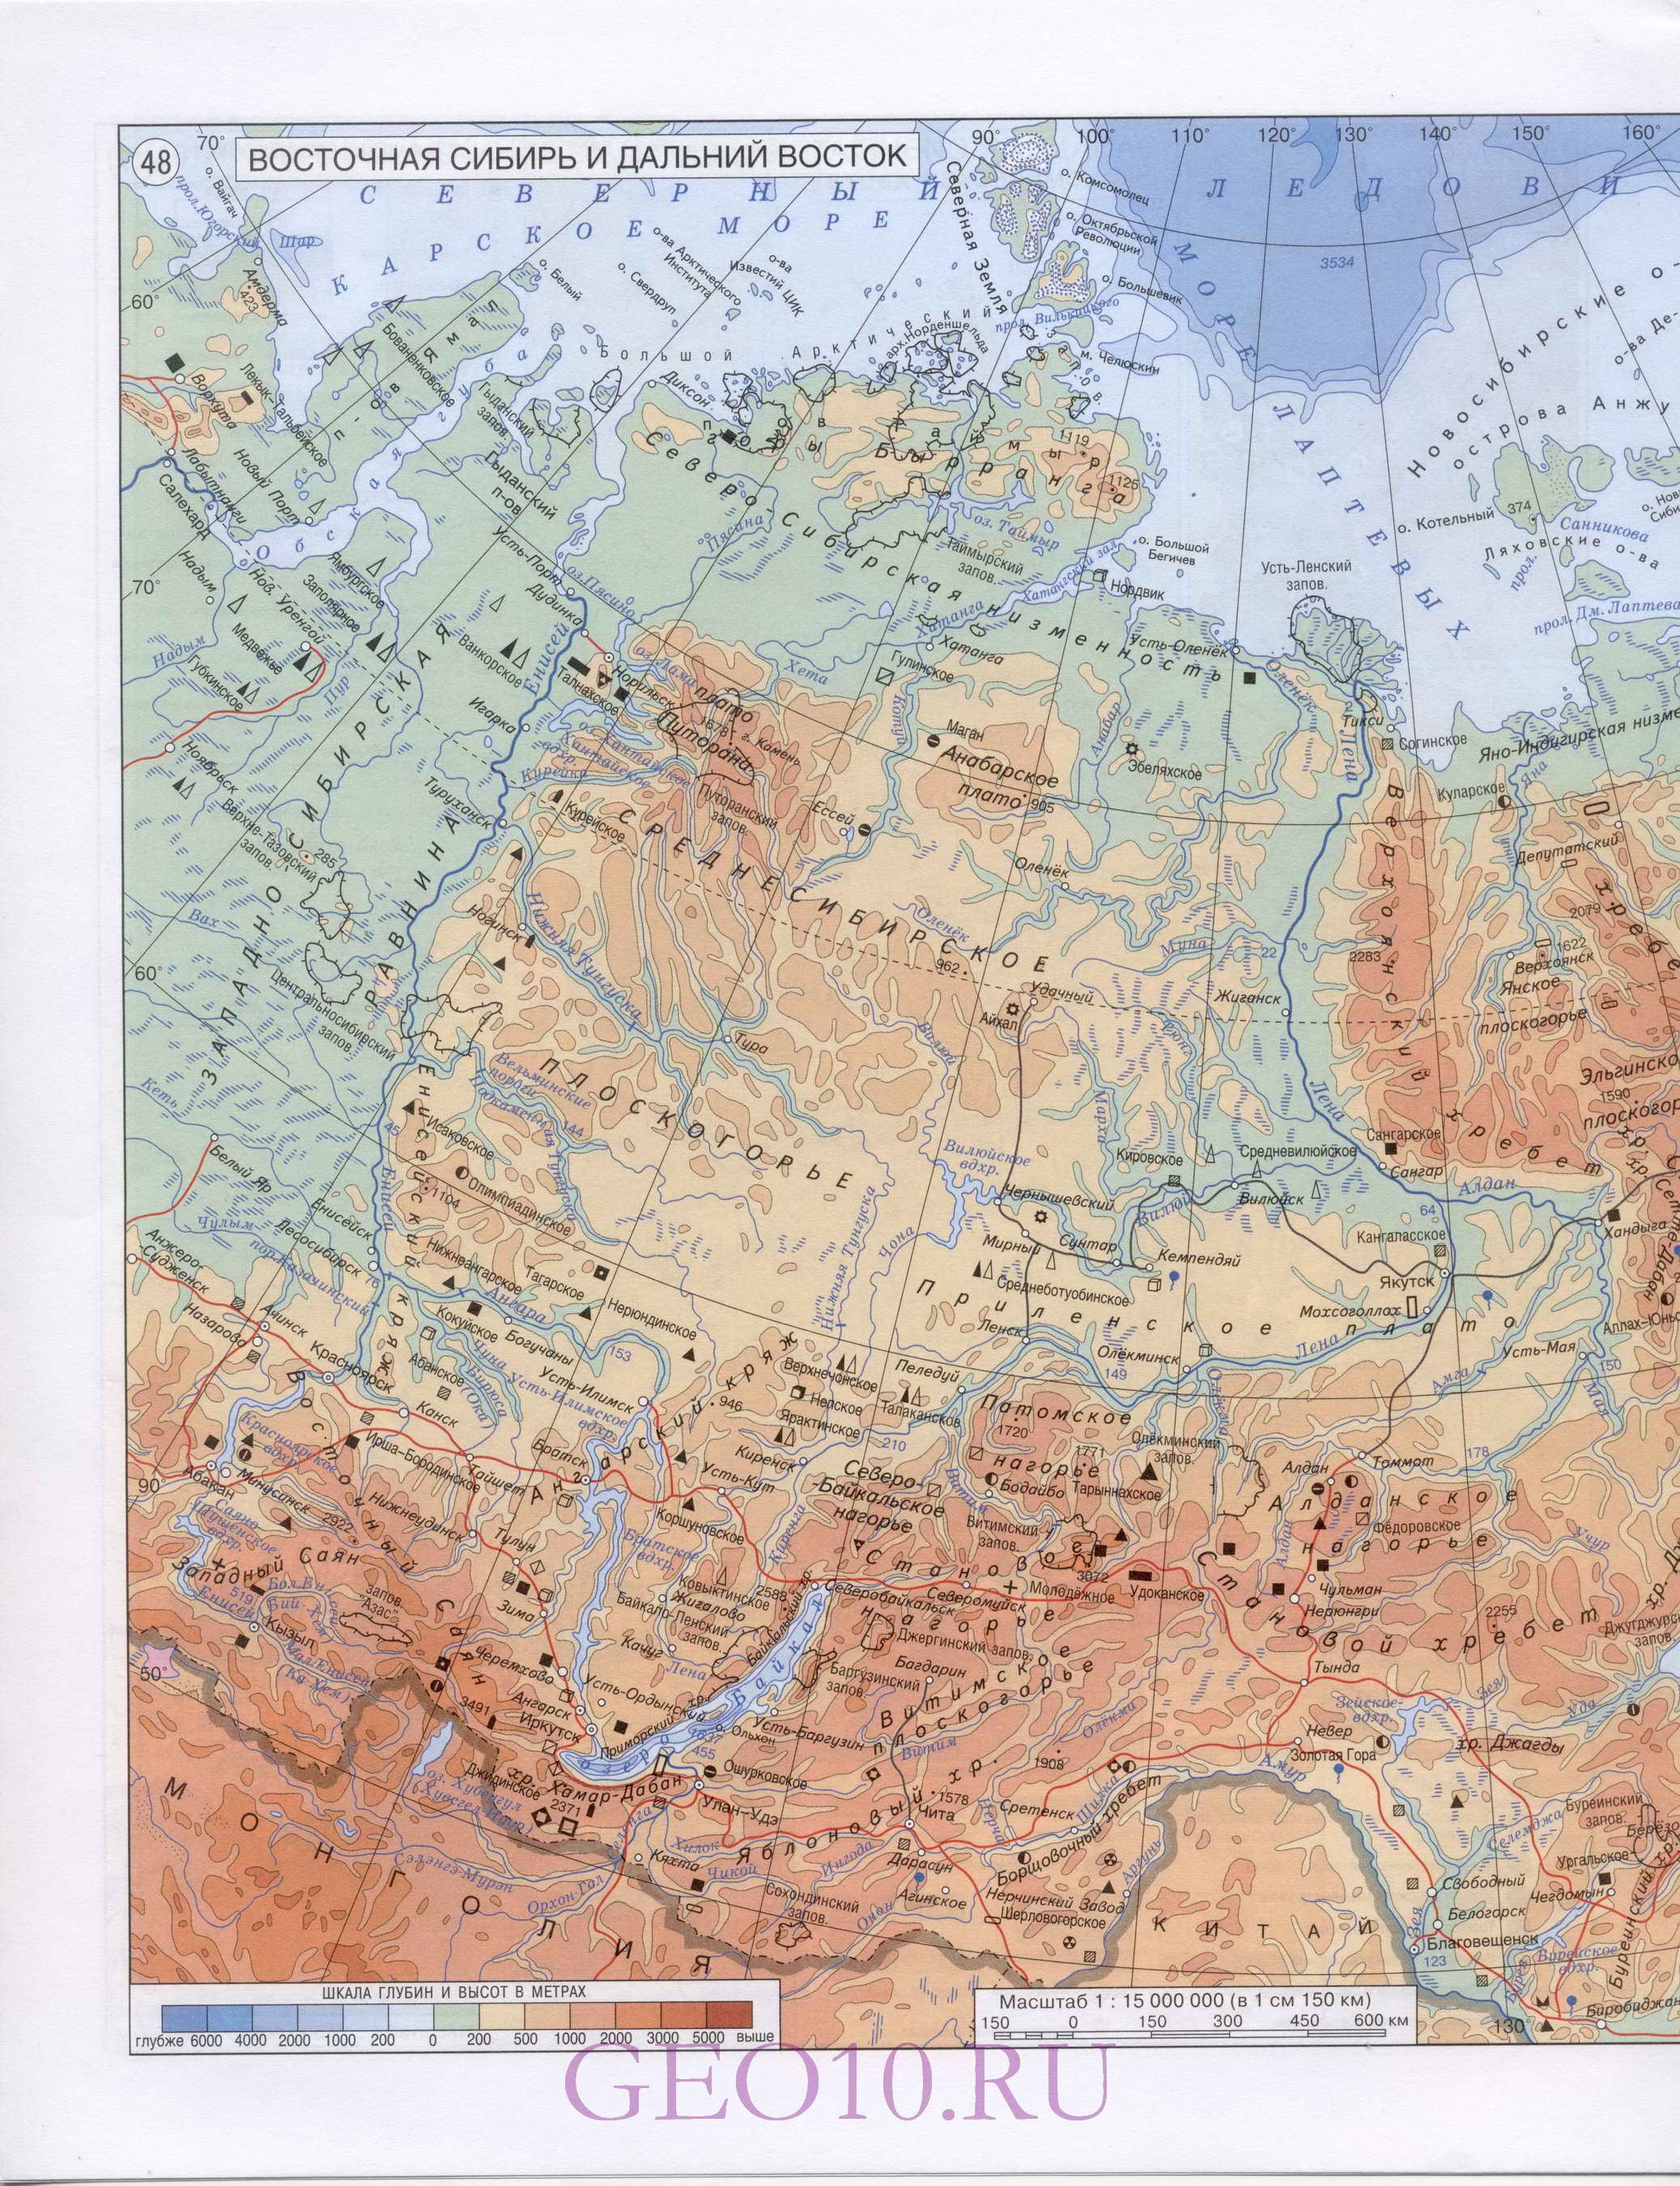 Карта Сибири. Географическая карта - Западная Сибирь и Восточная Сибирь. Большая подробная карта Западной Сибири и Восточной Сибири, B0 - 